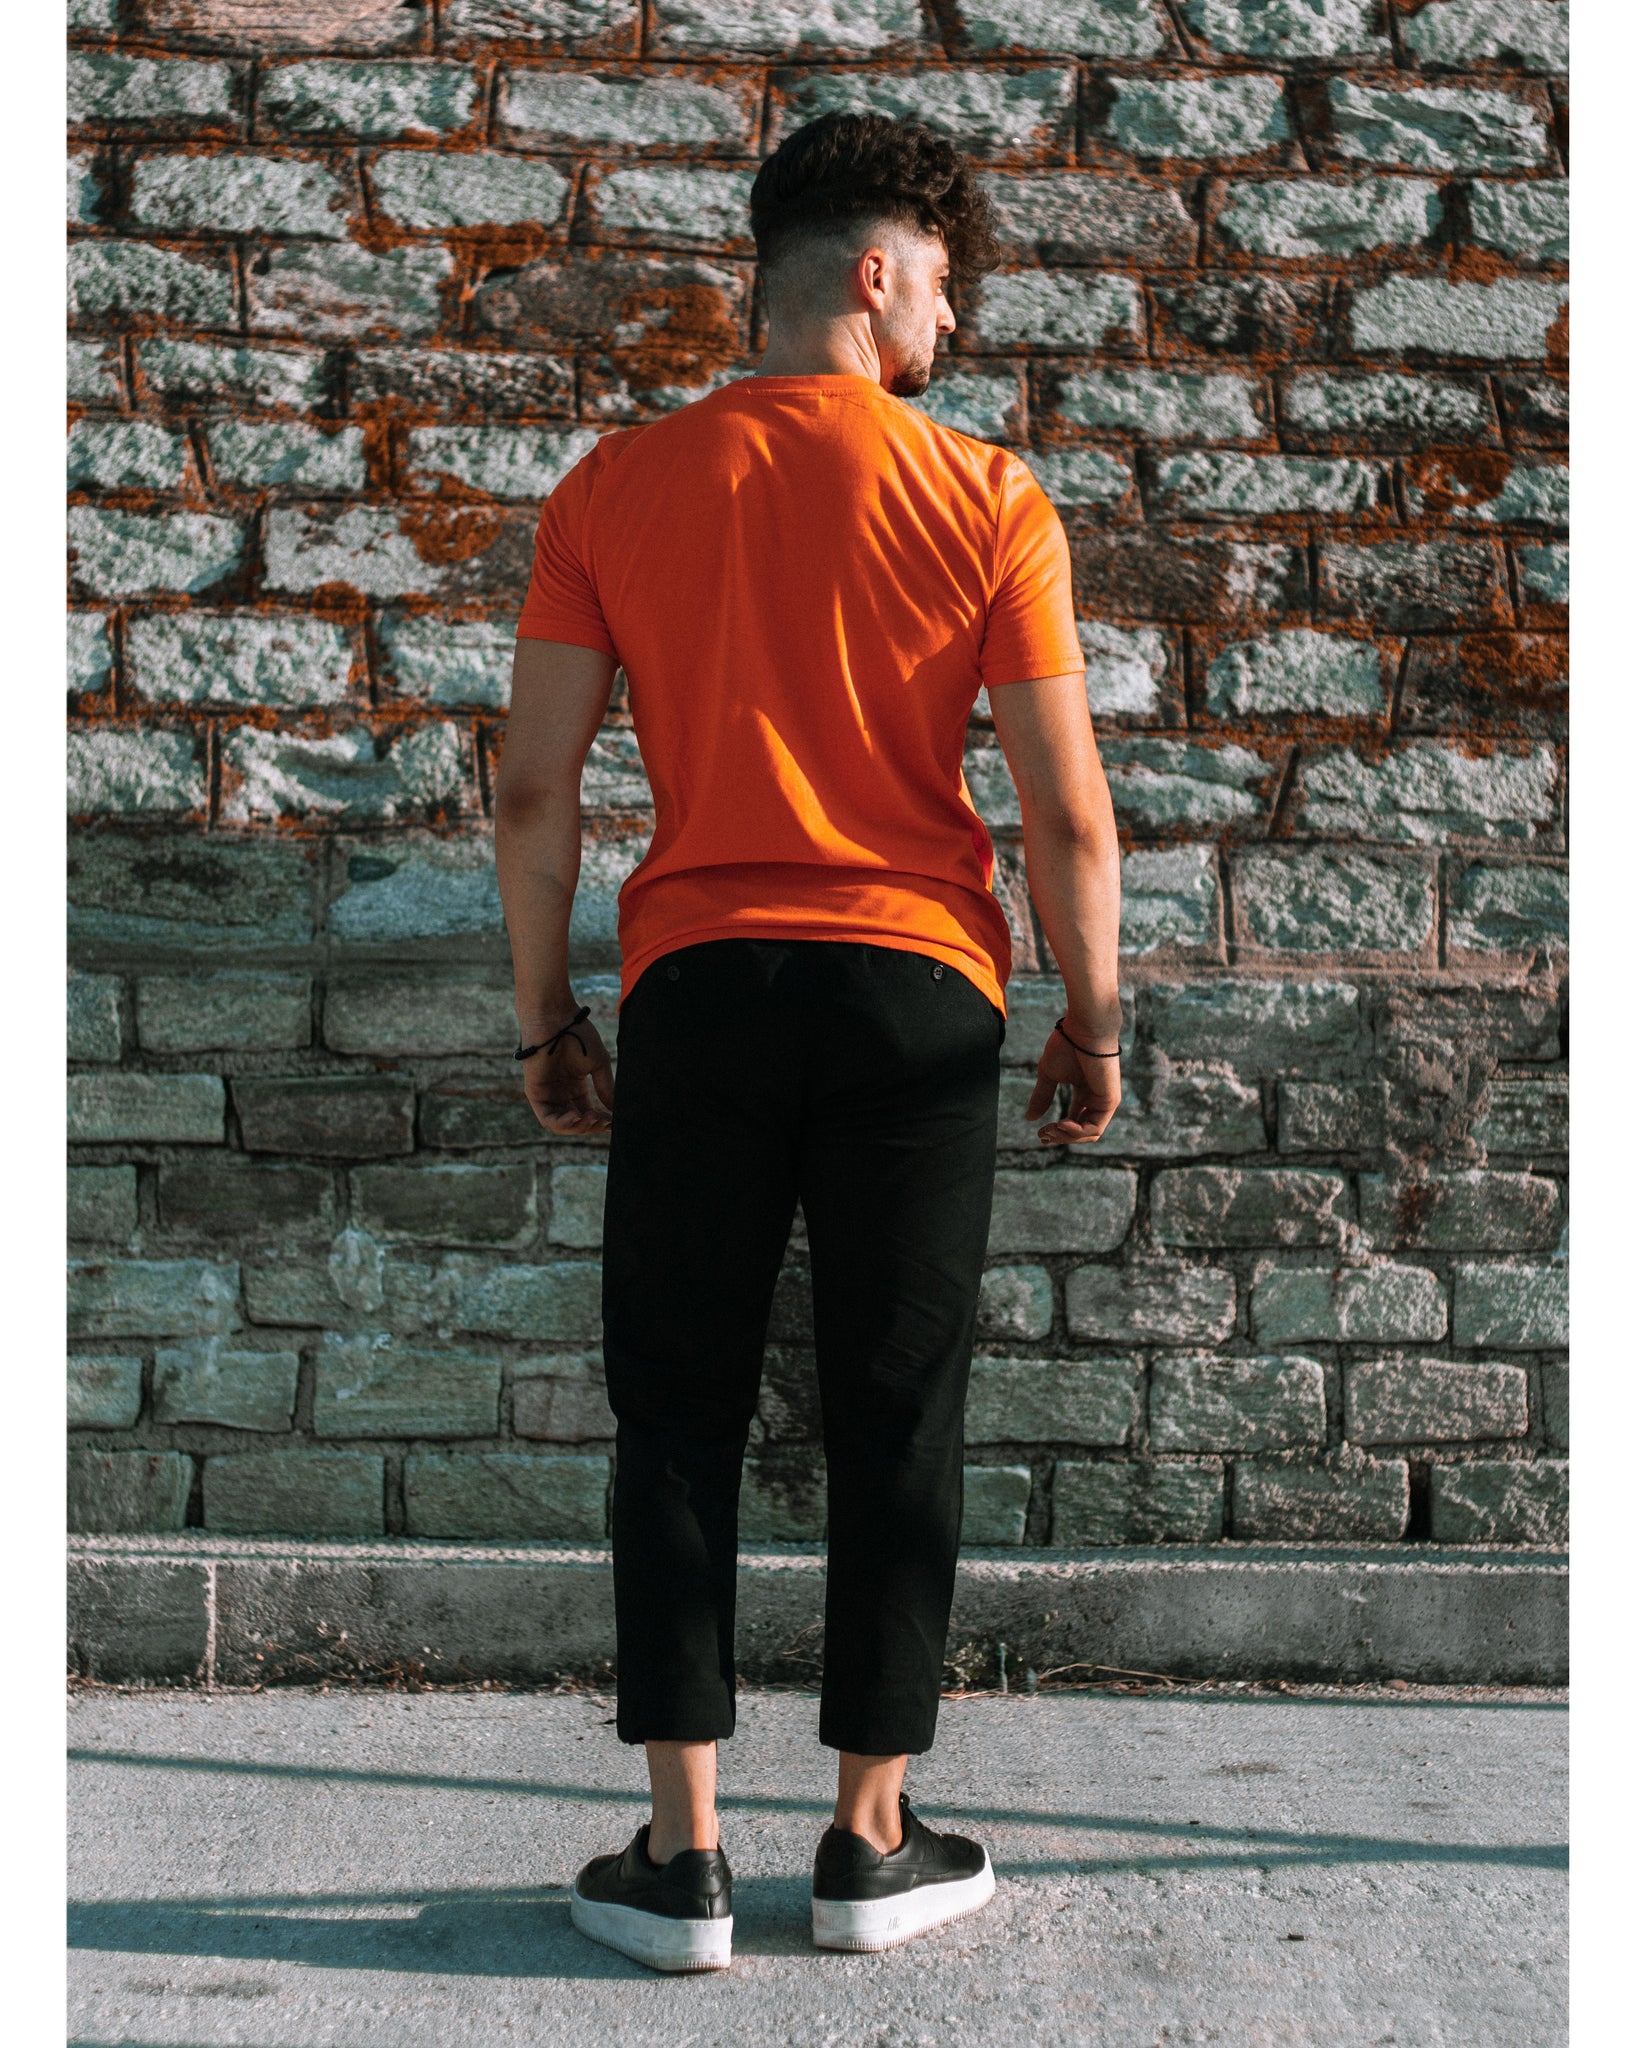 Model trägt 4GAINS unisex T-Shirt in orange/black